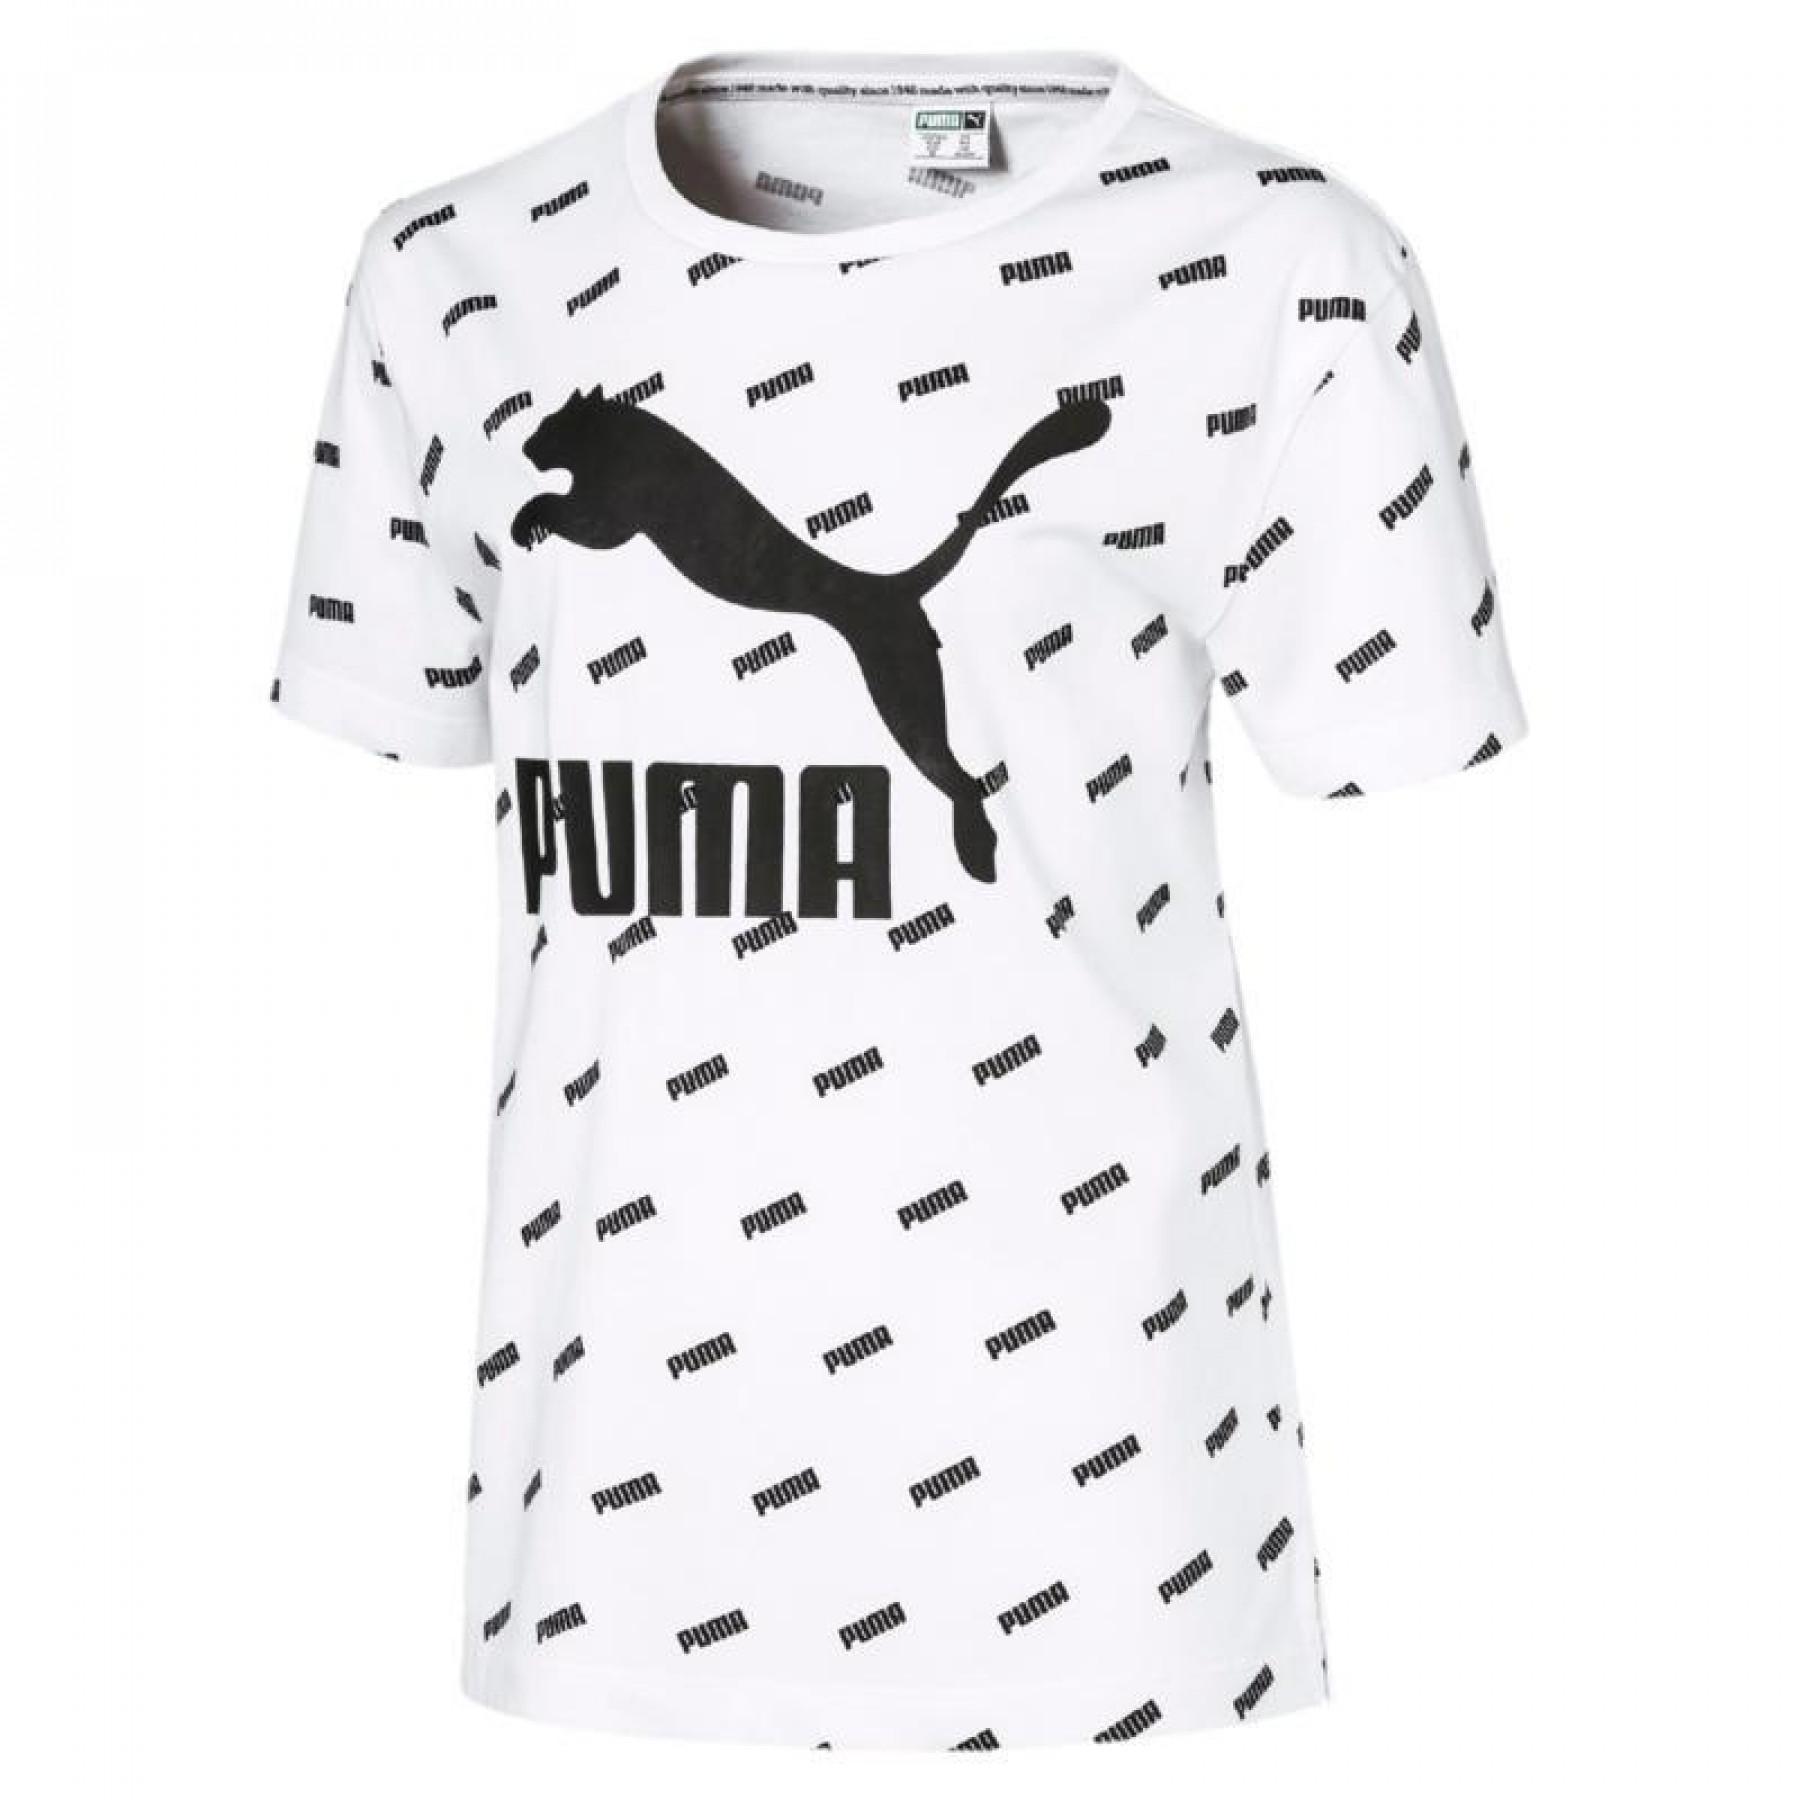 Maglietta per bambini Puma logo Graphic